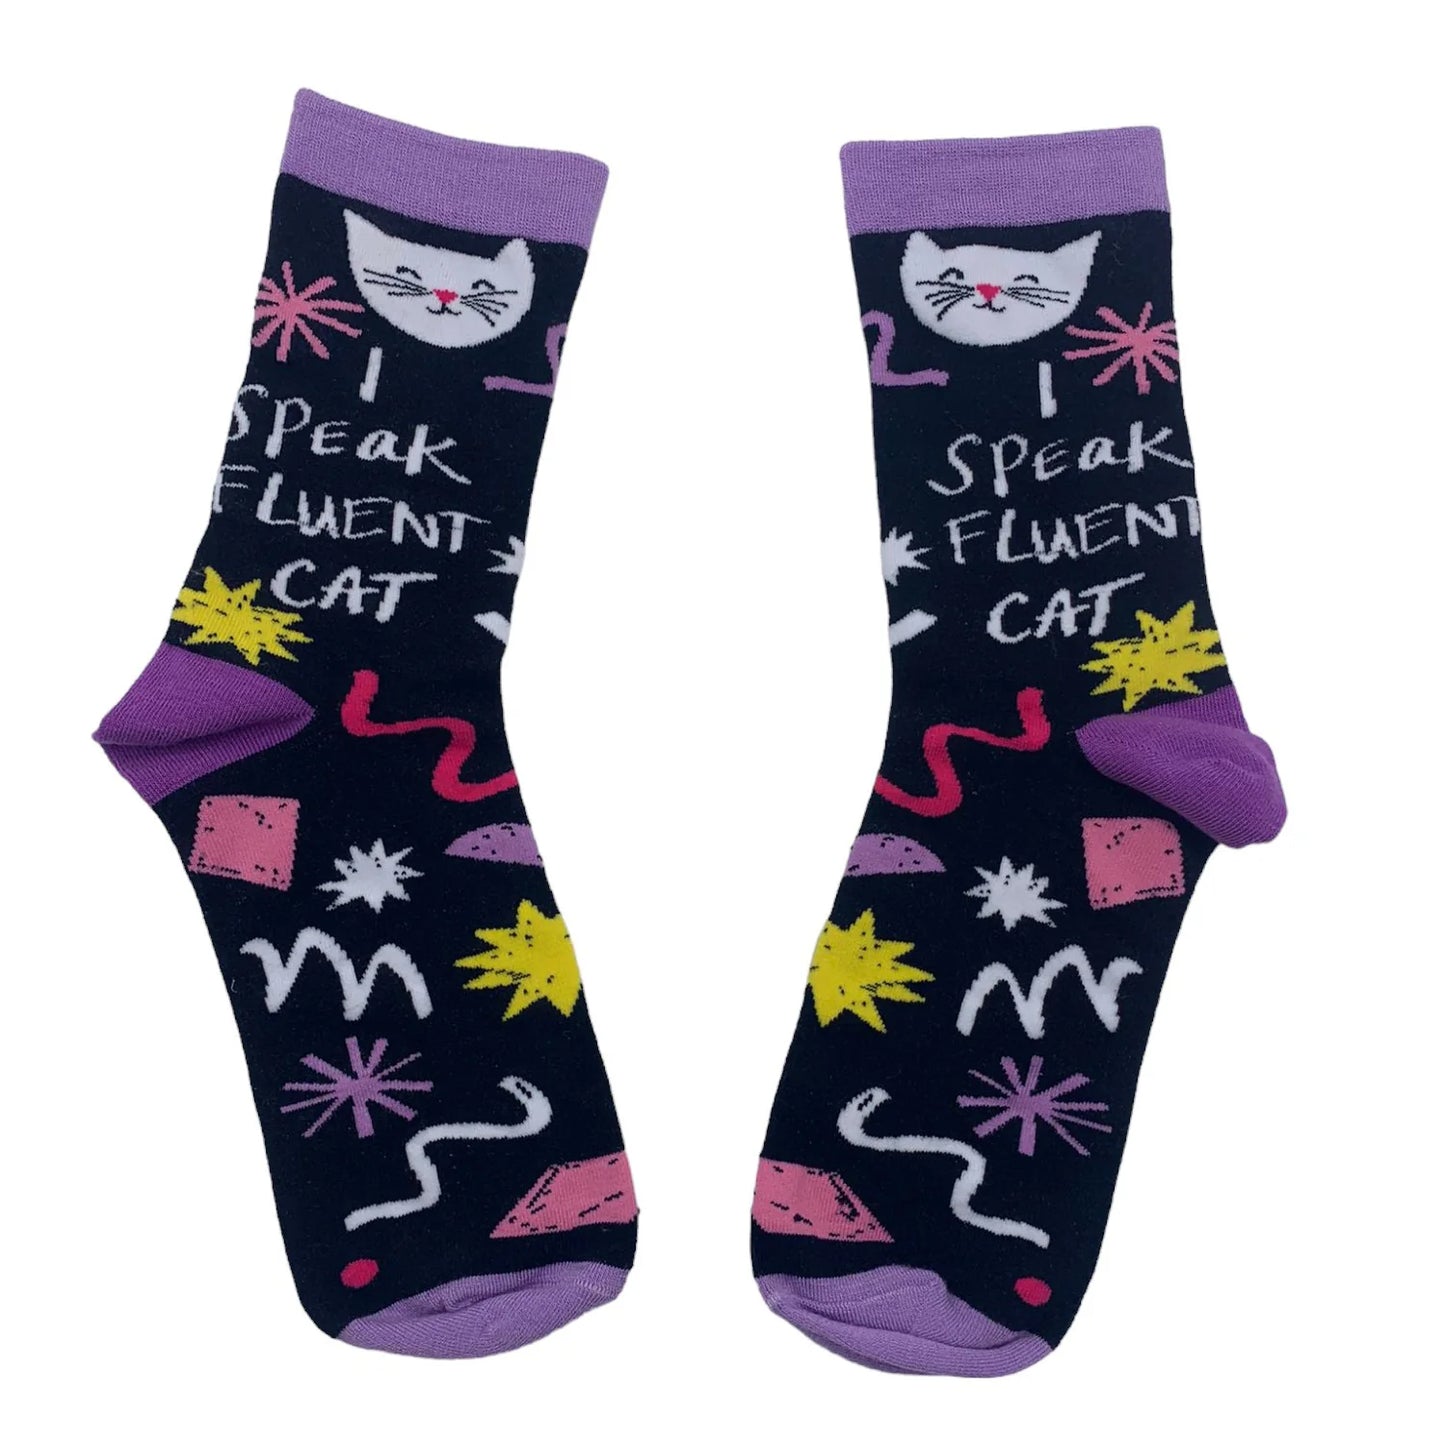 House of Disaster - Small Talk ‘I speak fluent cat’ socks